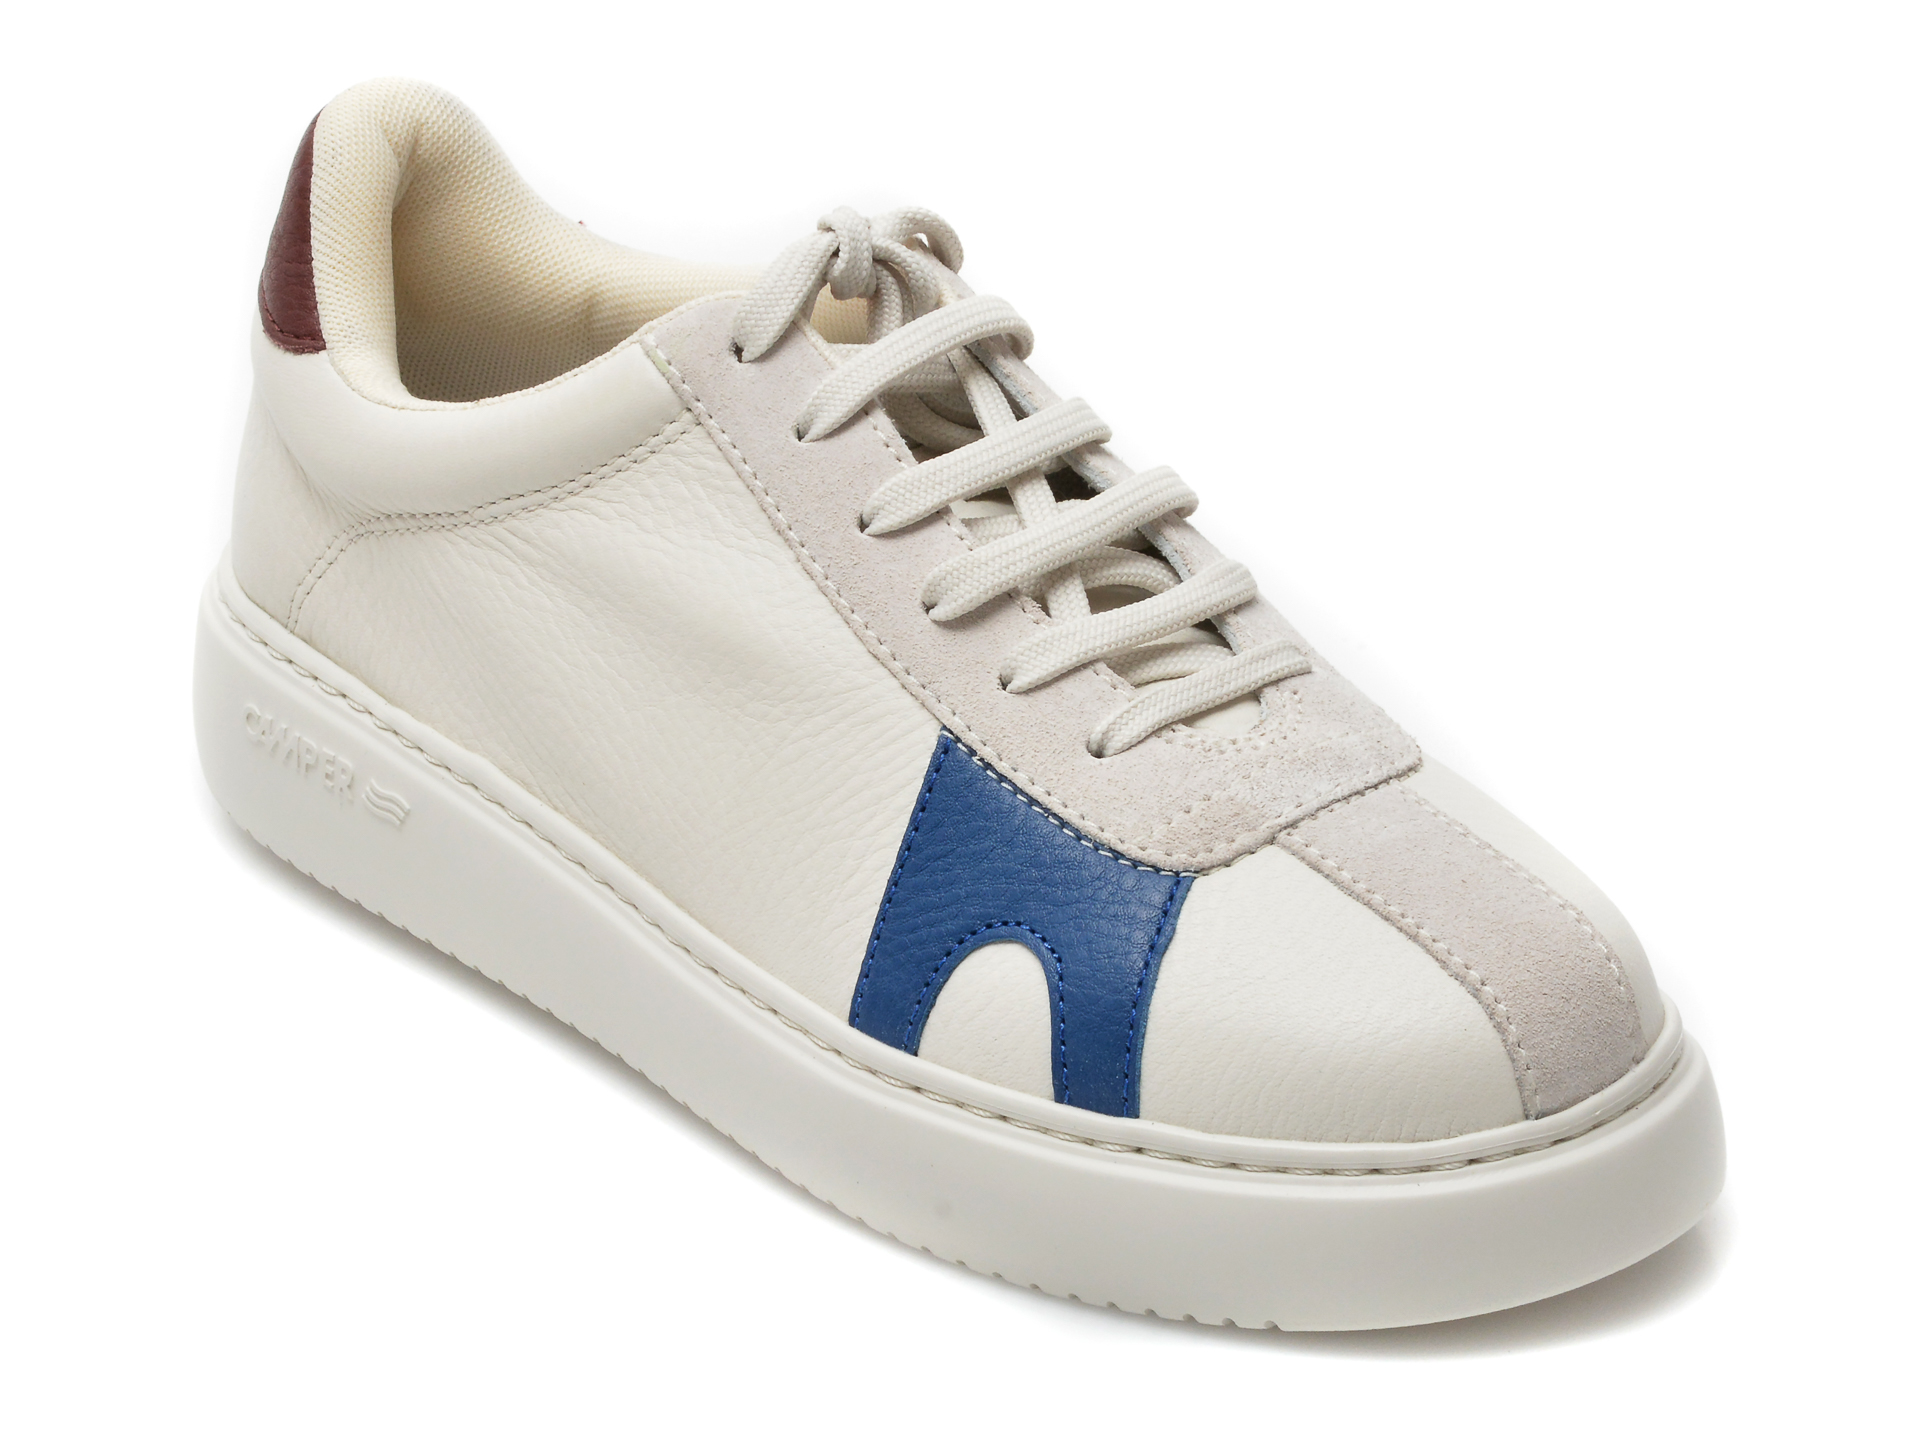 Pantofi sport CAMPER albi, K201311, din piele naturala Camper